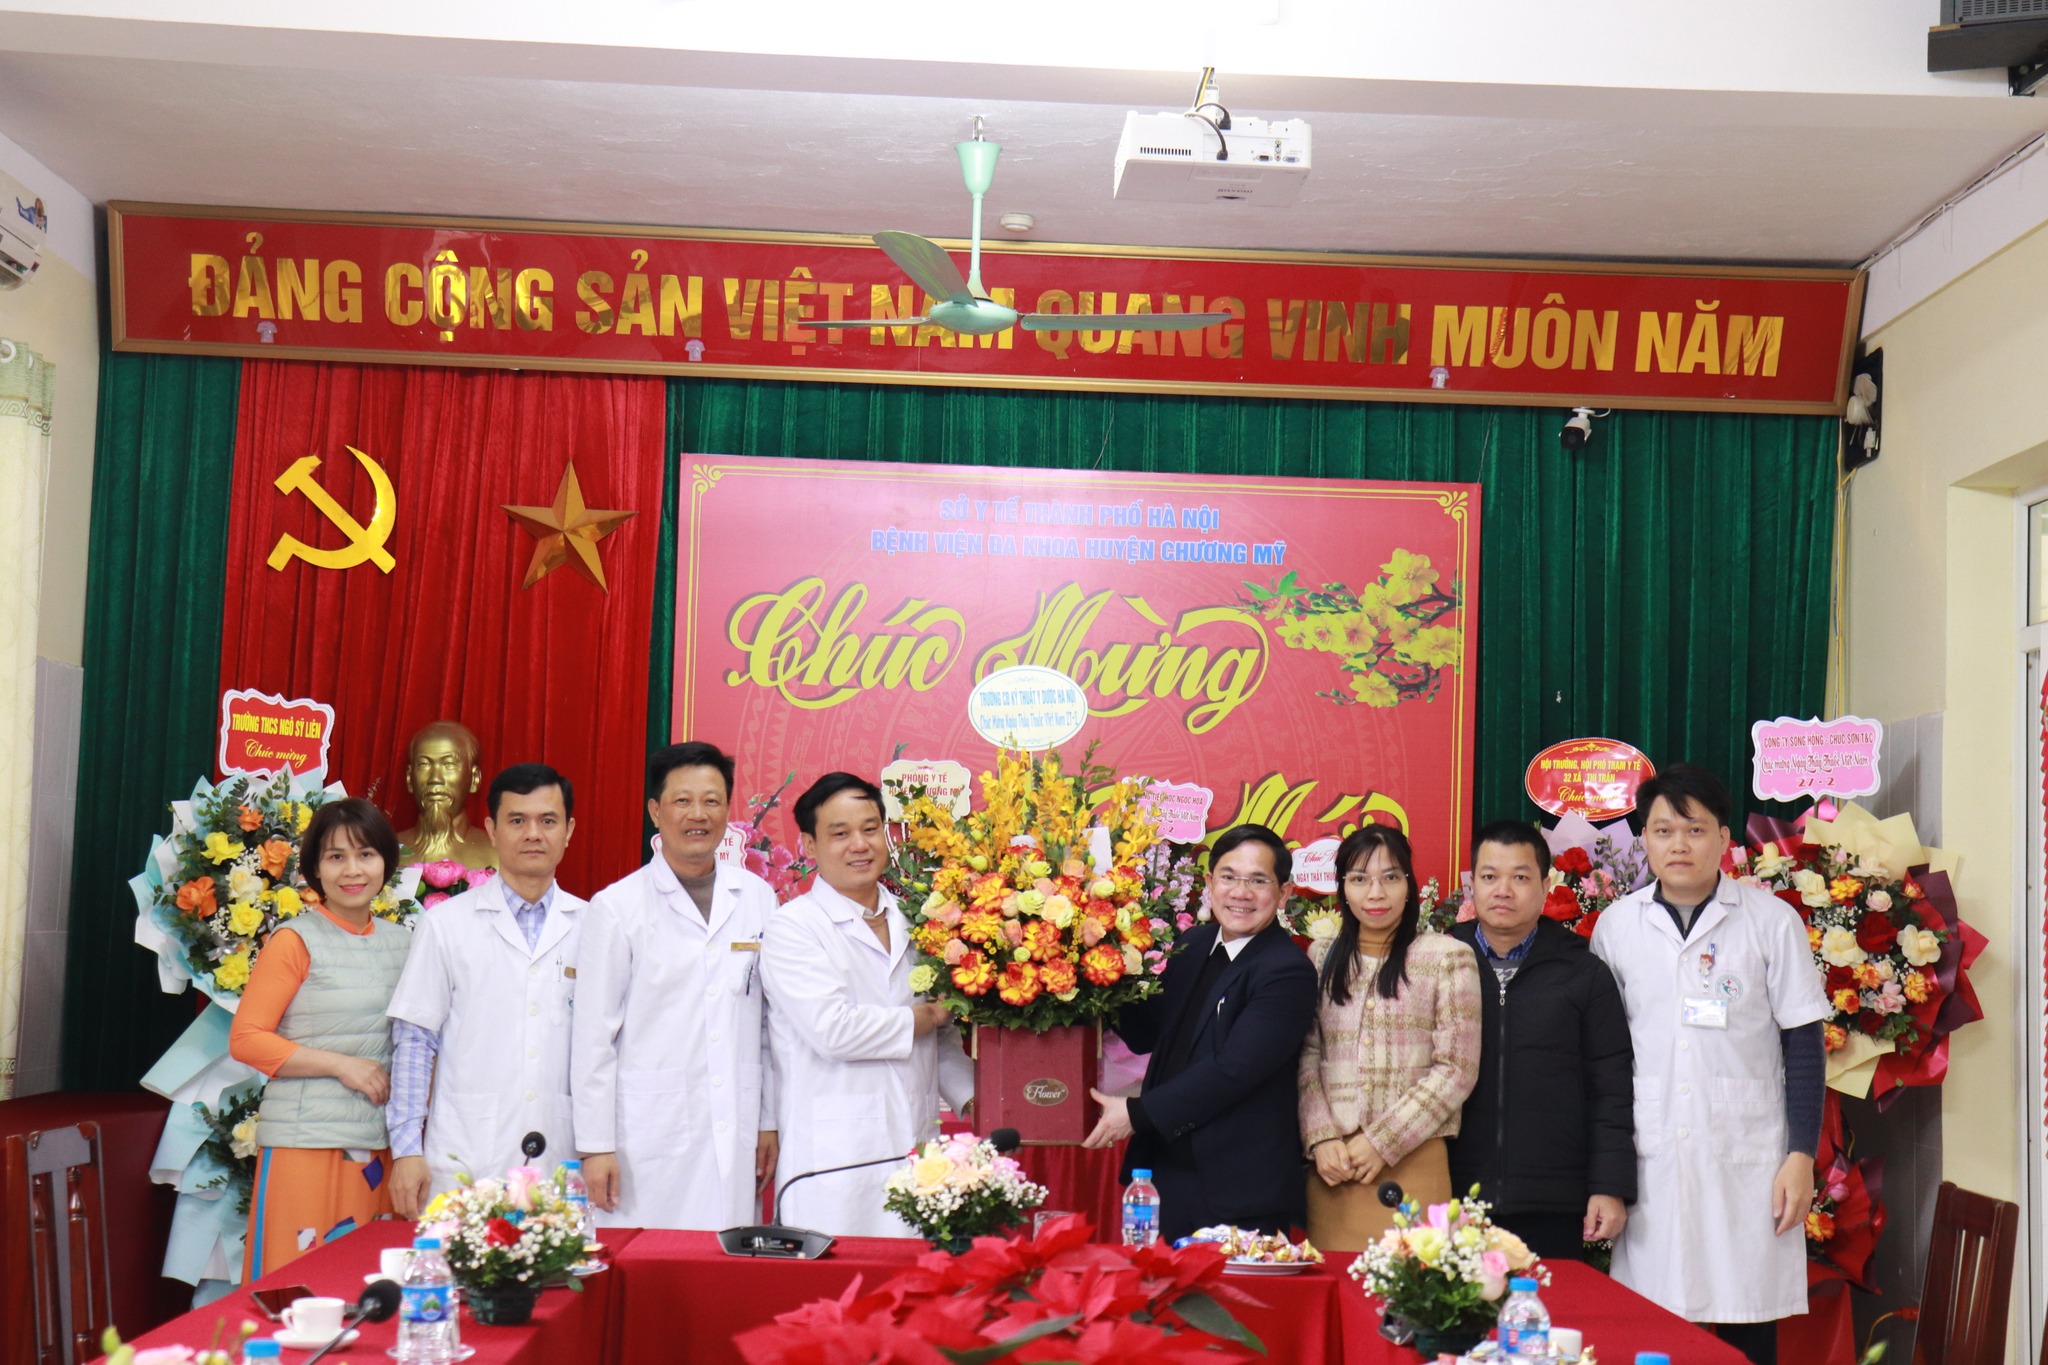 Chào mừng kỷ niệm 69 năm ngày Thầy thuốc Việt Nam (27/02/1955 – 27/02/2024)